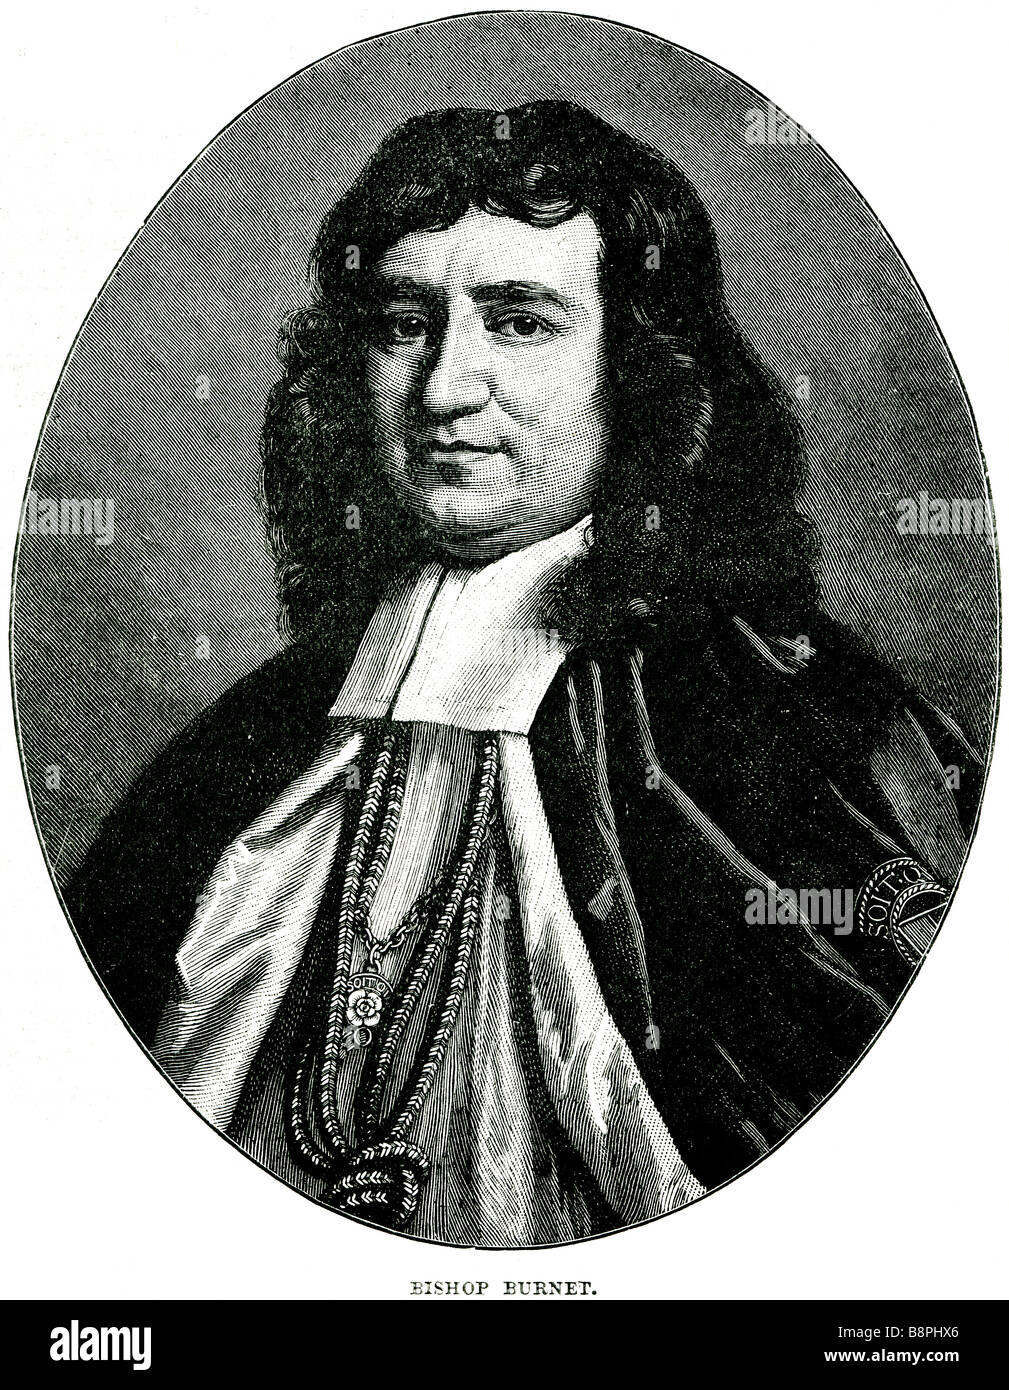 Gilbert Burnett (Septembre 18, 1643 - Mars 17, 1715) était un théologien et historien écossais, et l'évêque de Salisbury. Il est fl Banque D'Images